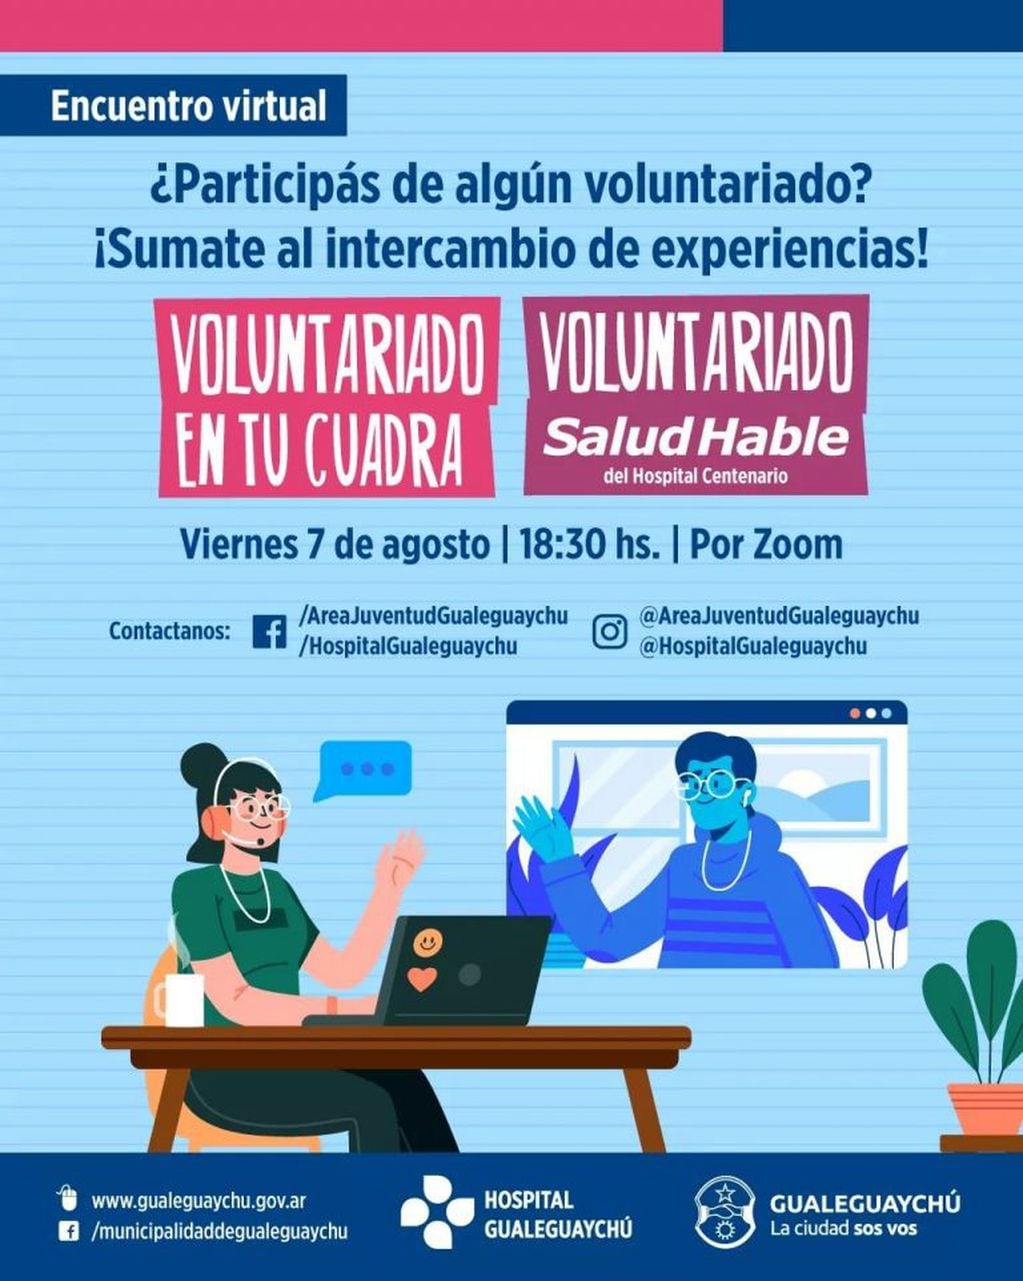 Encuentro virtual voluntariado Gualeguaychú
Crédito: MDG